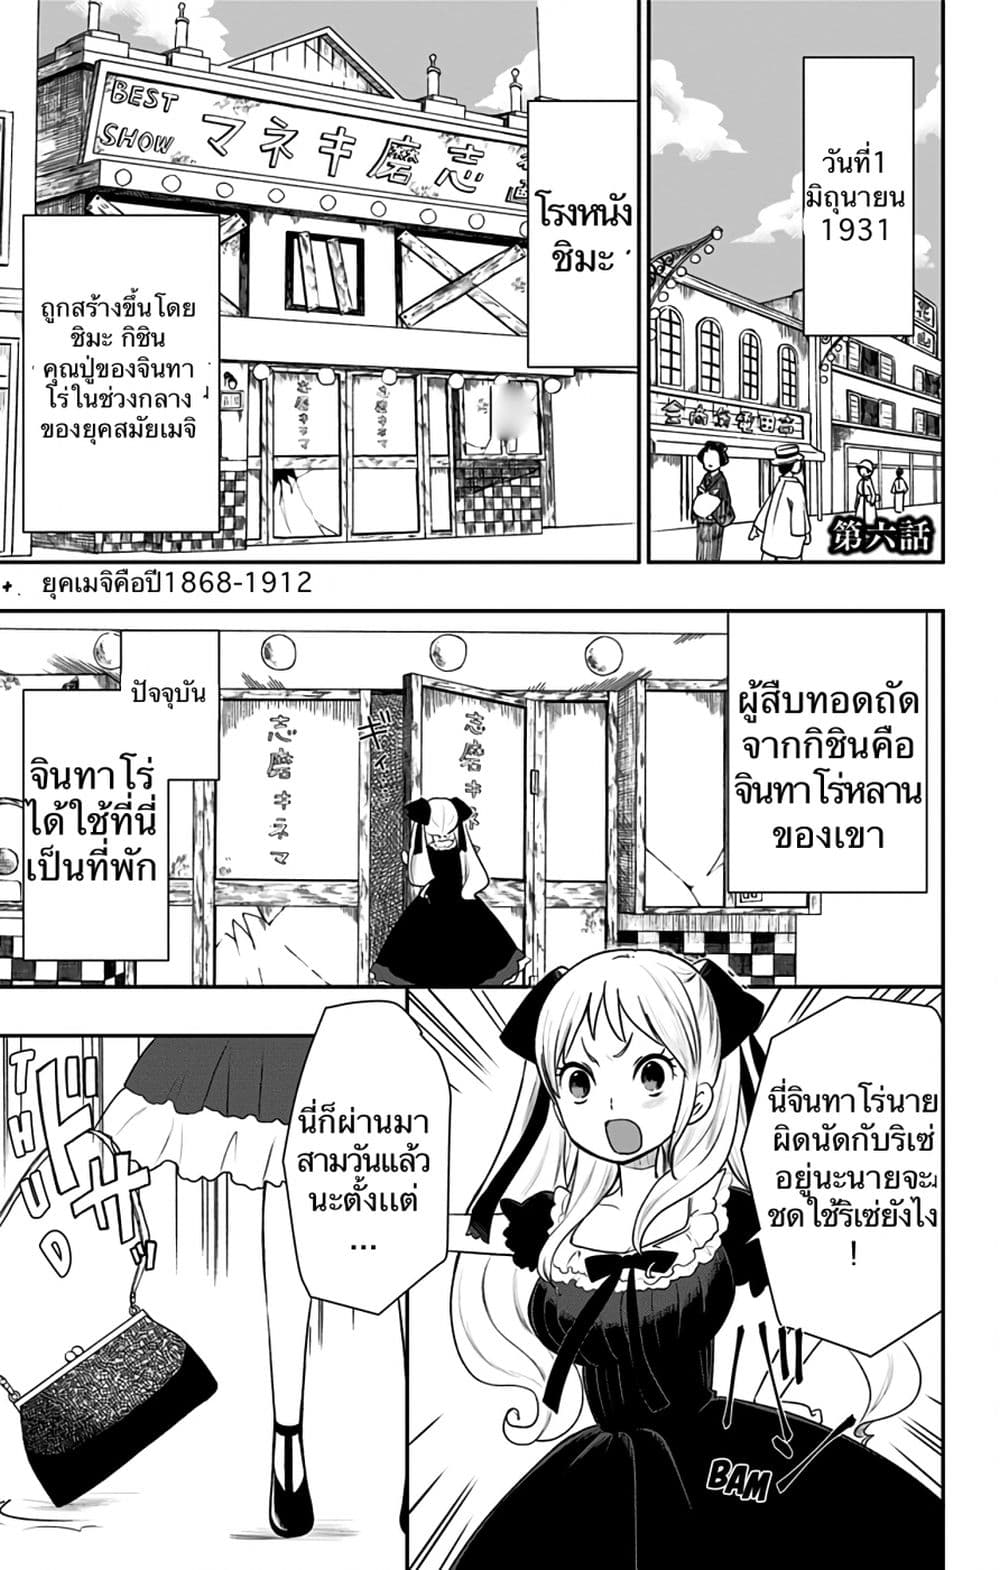 Shouwa Otome Otogibanashi เรื่องเล่าของสาวน้อย ยุคโชวะ ตอนที่ 6 (1)